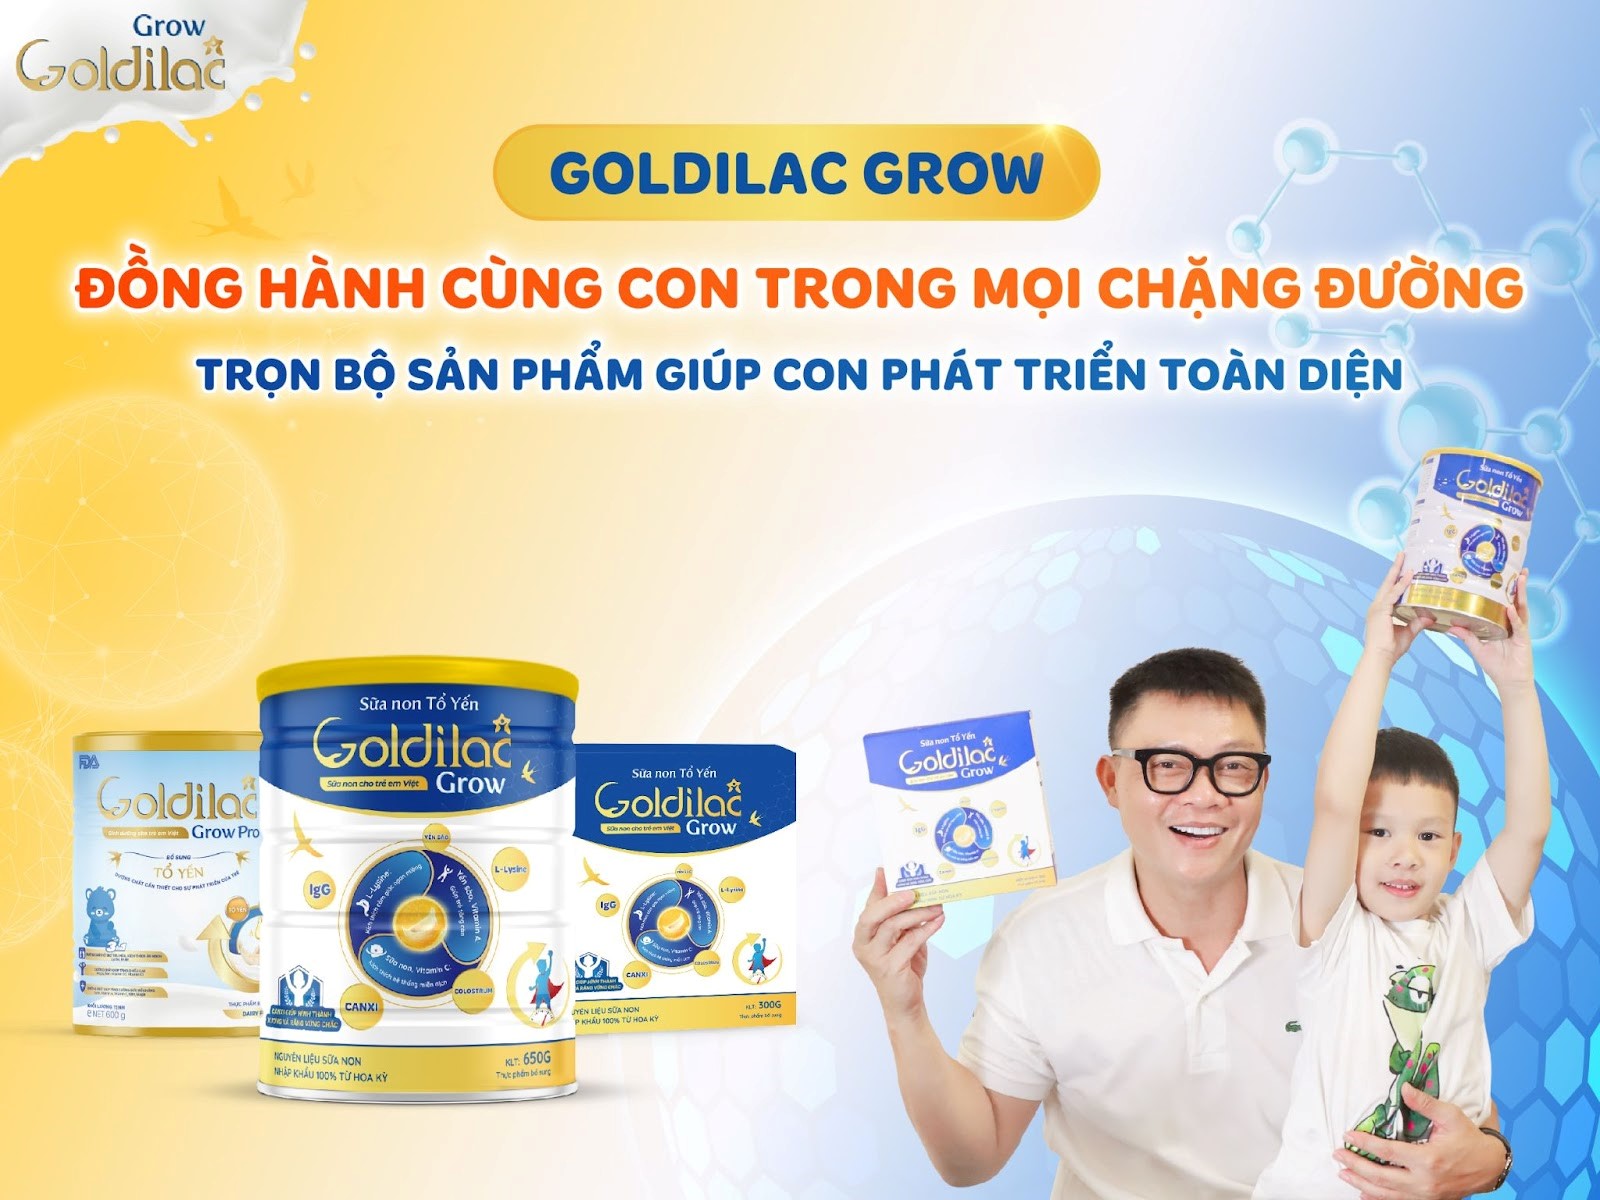 Goldilac Grow Việt Nam - Dưỡng chất vàng cho trẻ chậm tăng cân, kém hấp thụ dinh dưỡng - ảnh 2